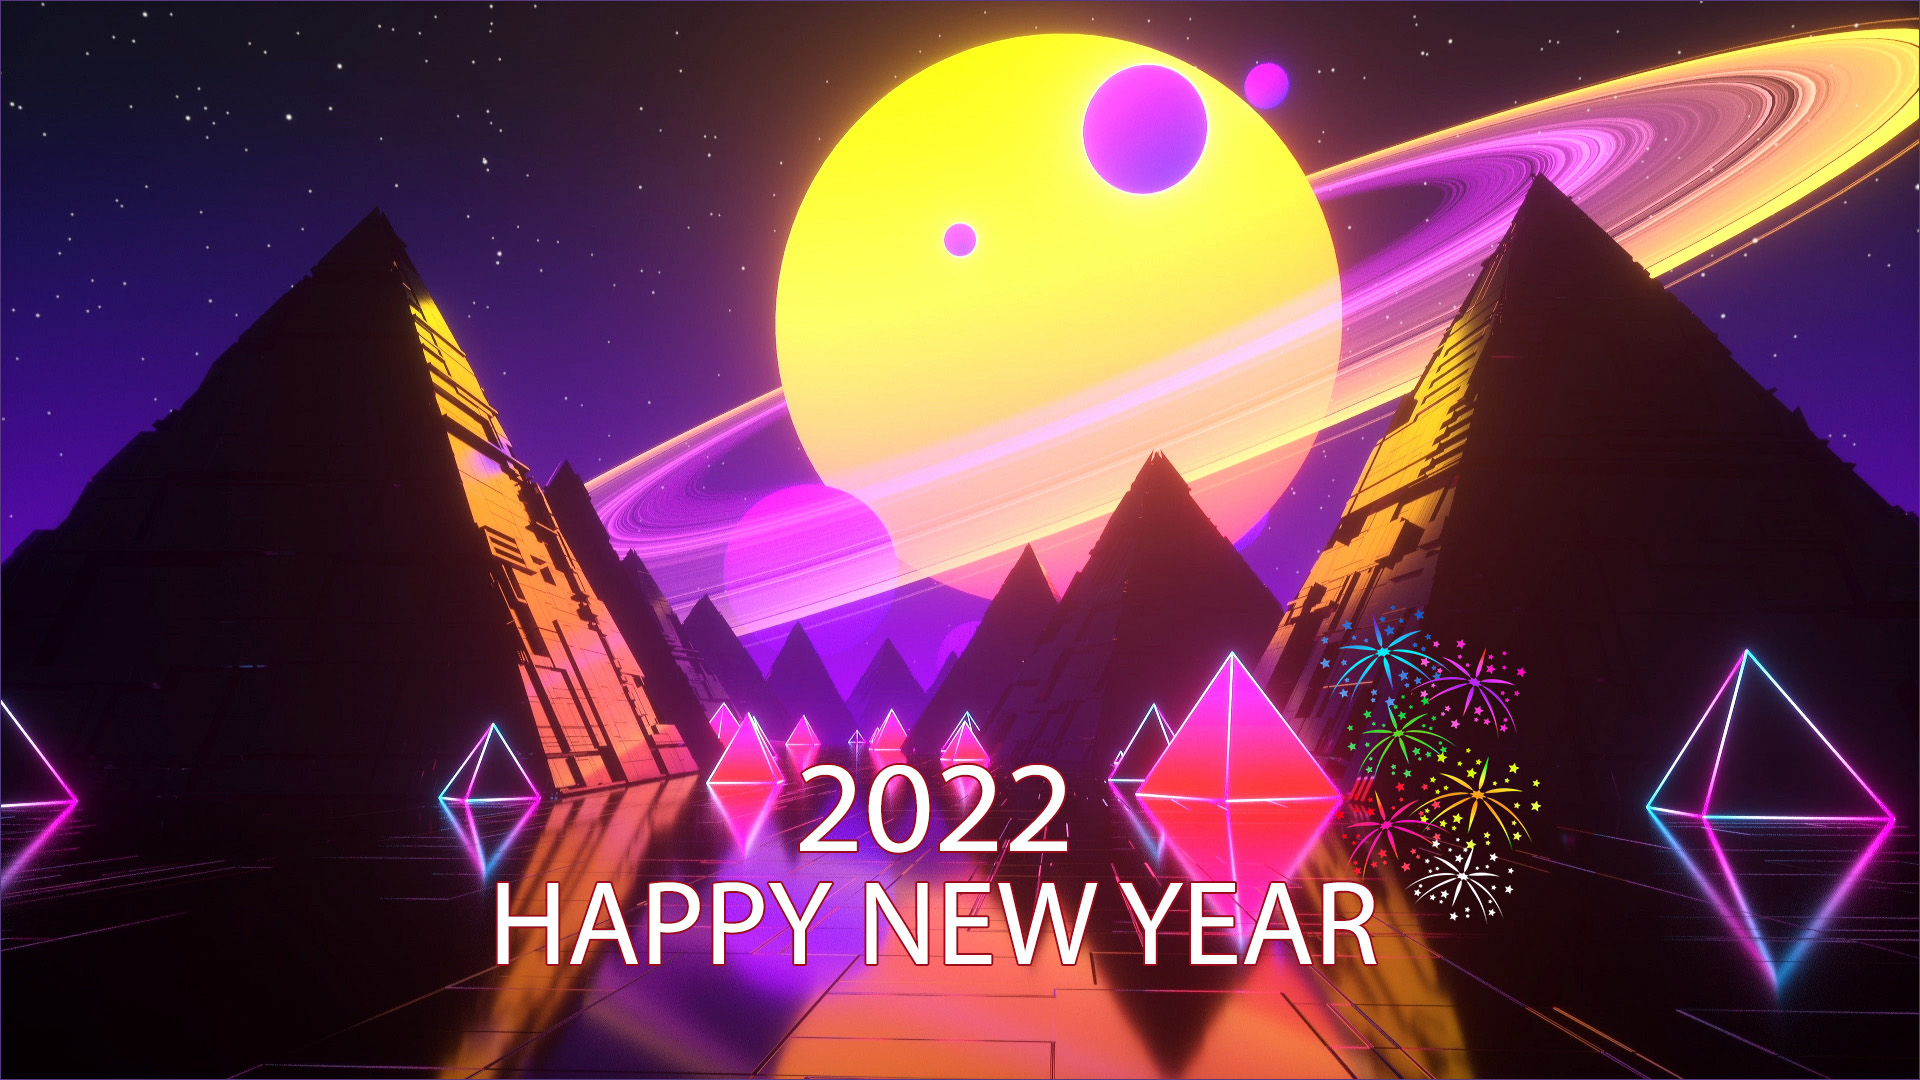 Ghép ảnh tết ghép ảnh chúc mừng năm mới 2023